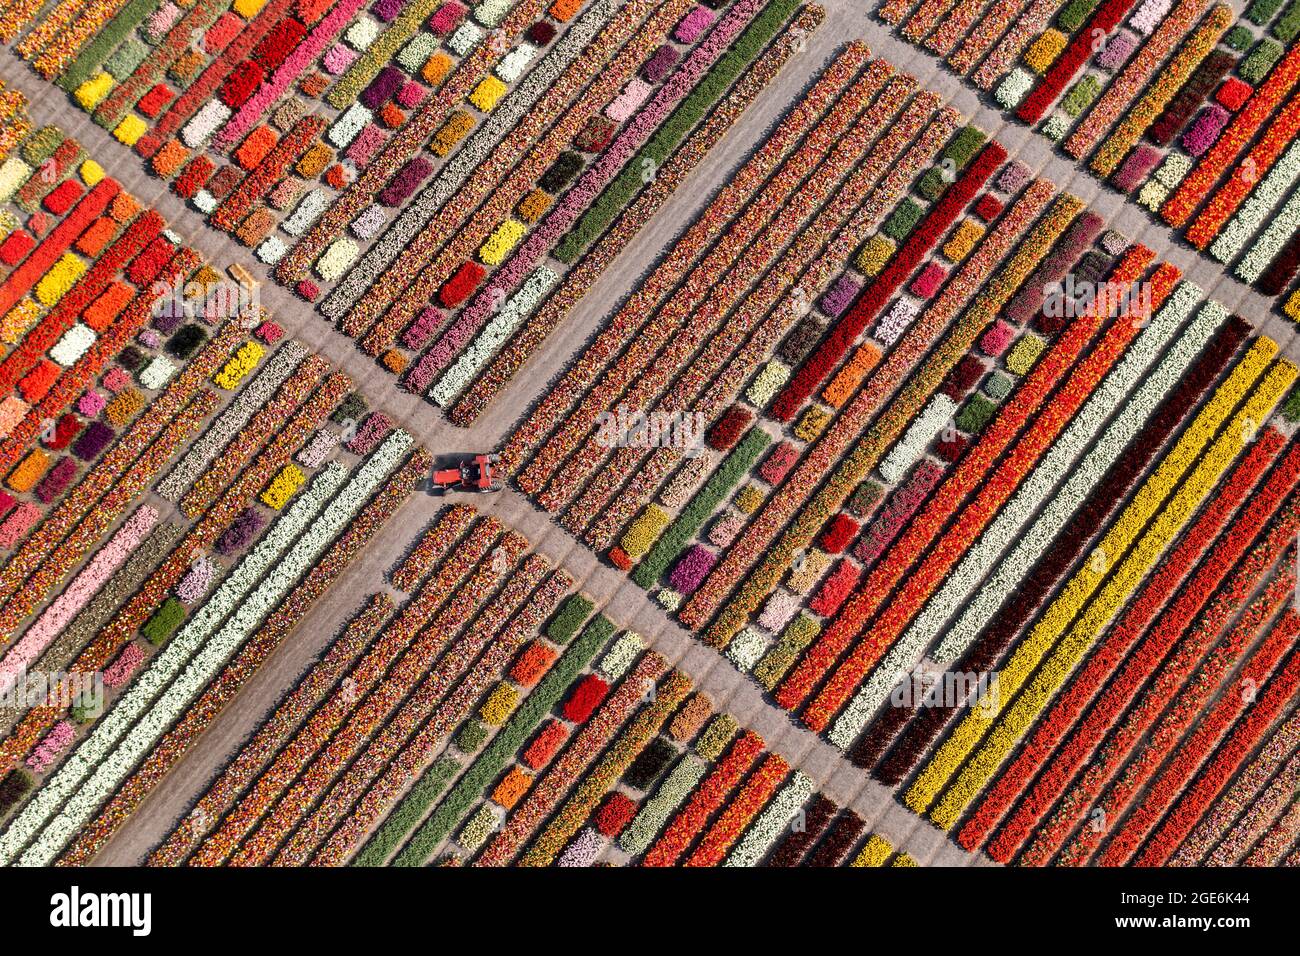 The Netherlands, Noordwijkerhout, Tulips, tulip fields. Aerial. Stock Photo